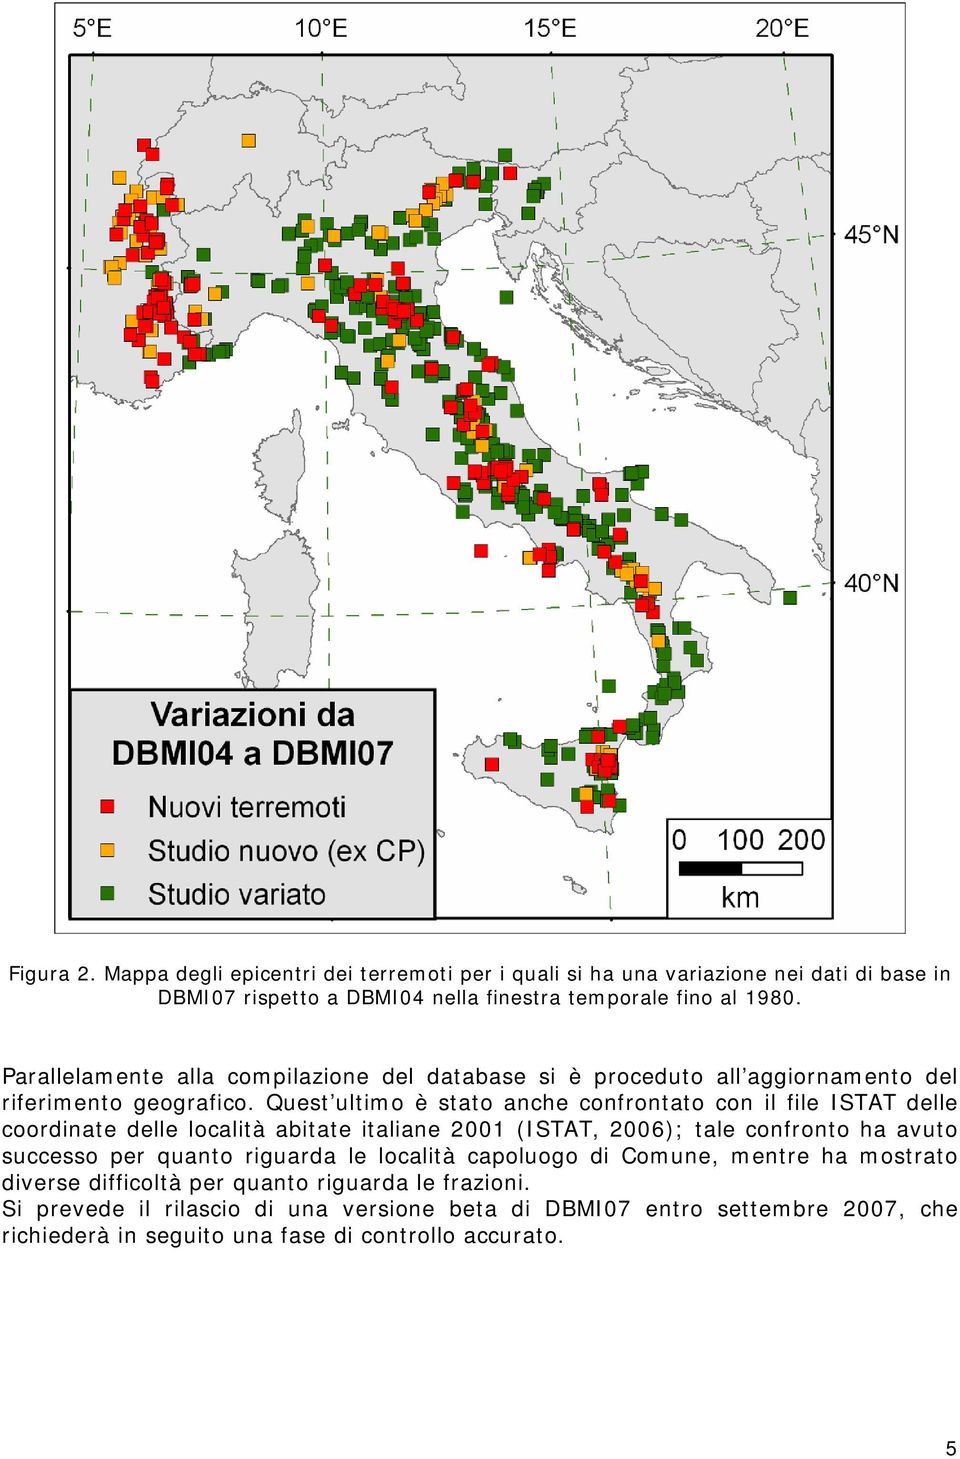 Quest ultimo è stato anche confrontato con il file ISTAT delle coordinate delle località abitate italiane 2001 (ISTAT, 2006); tale confronto ha avuto successo per quanto